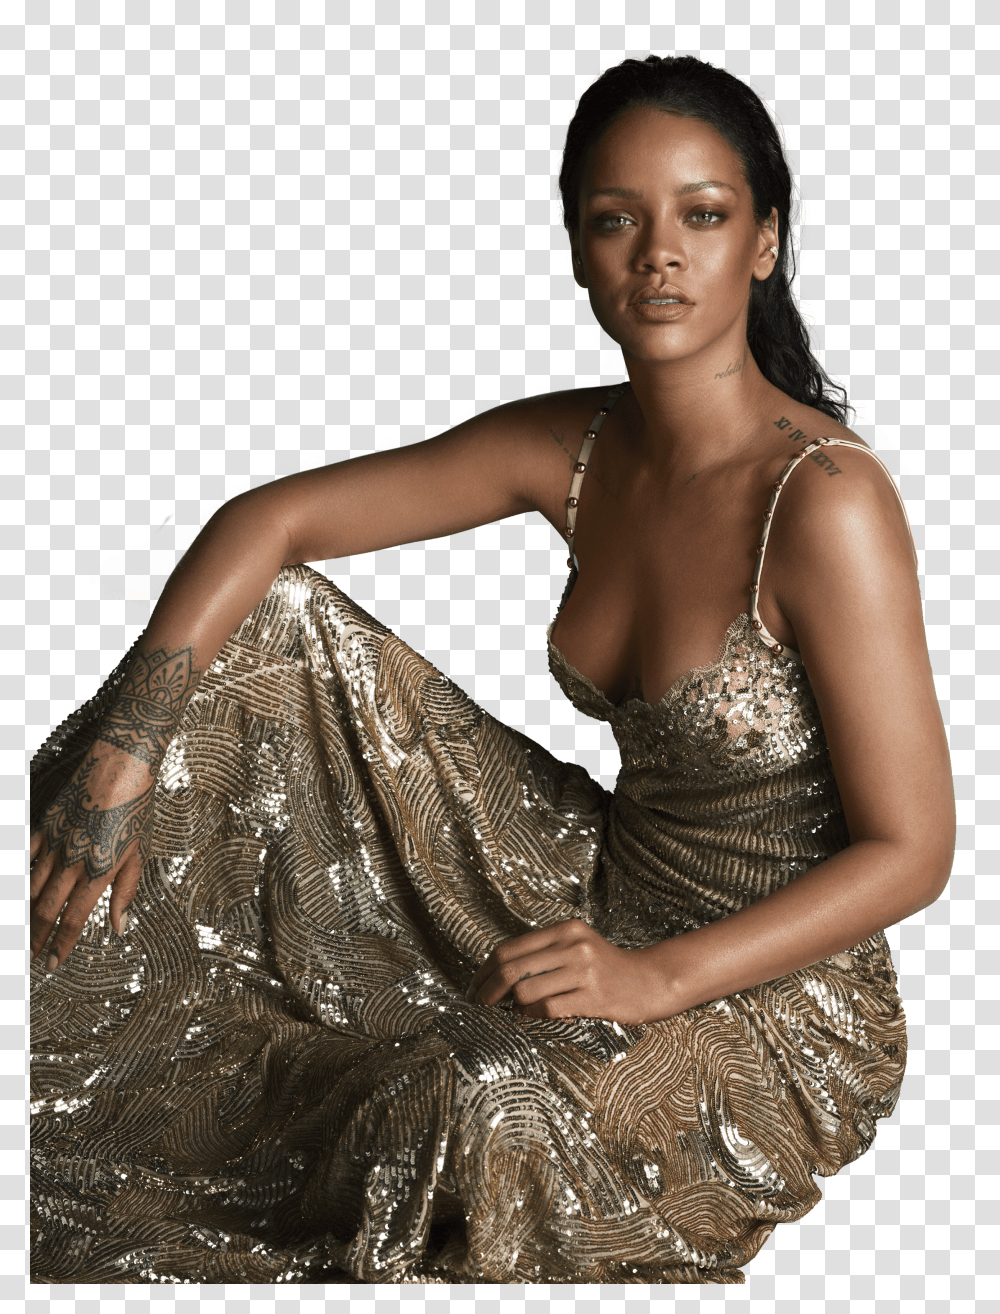 Download Rihanna Rihanna Gold Dress Transparent Png